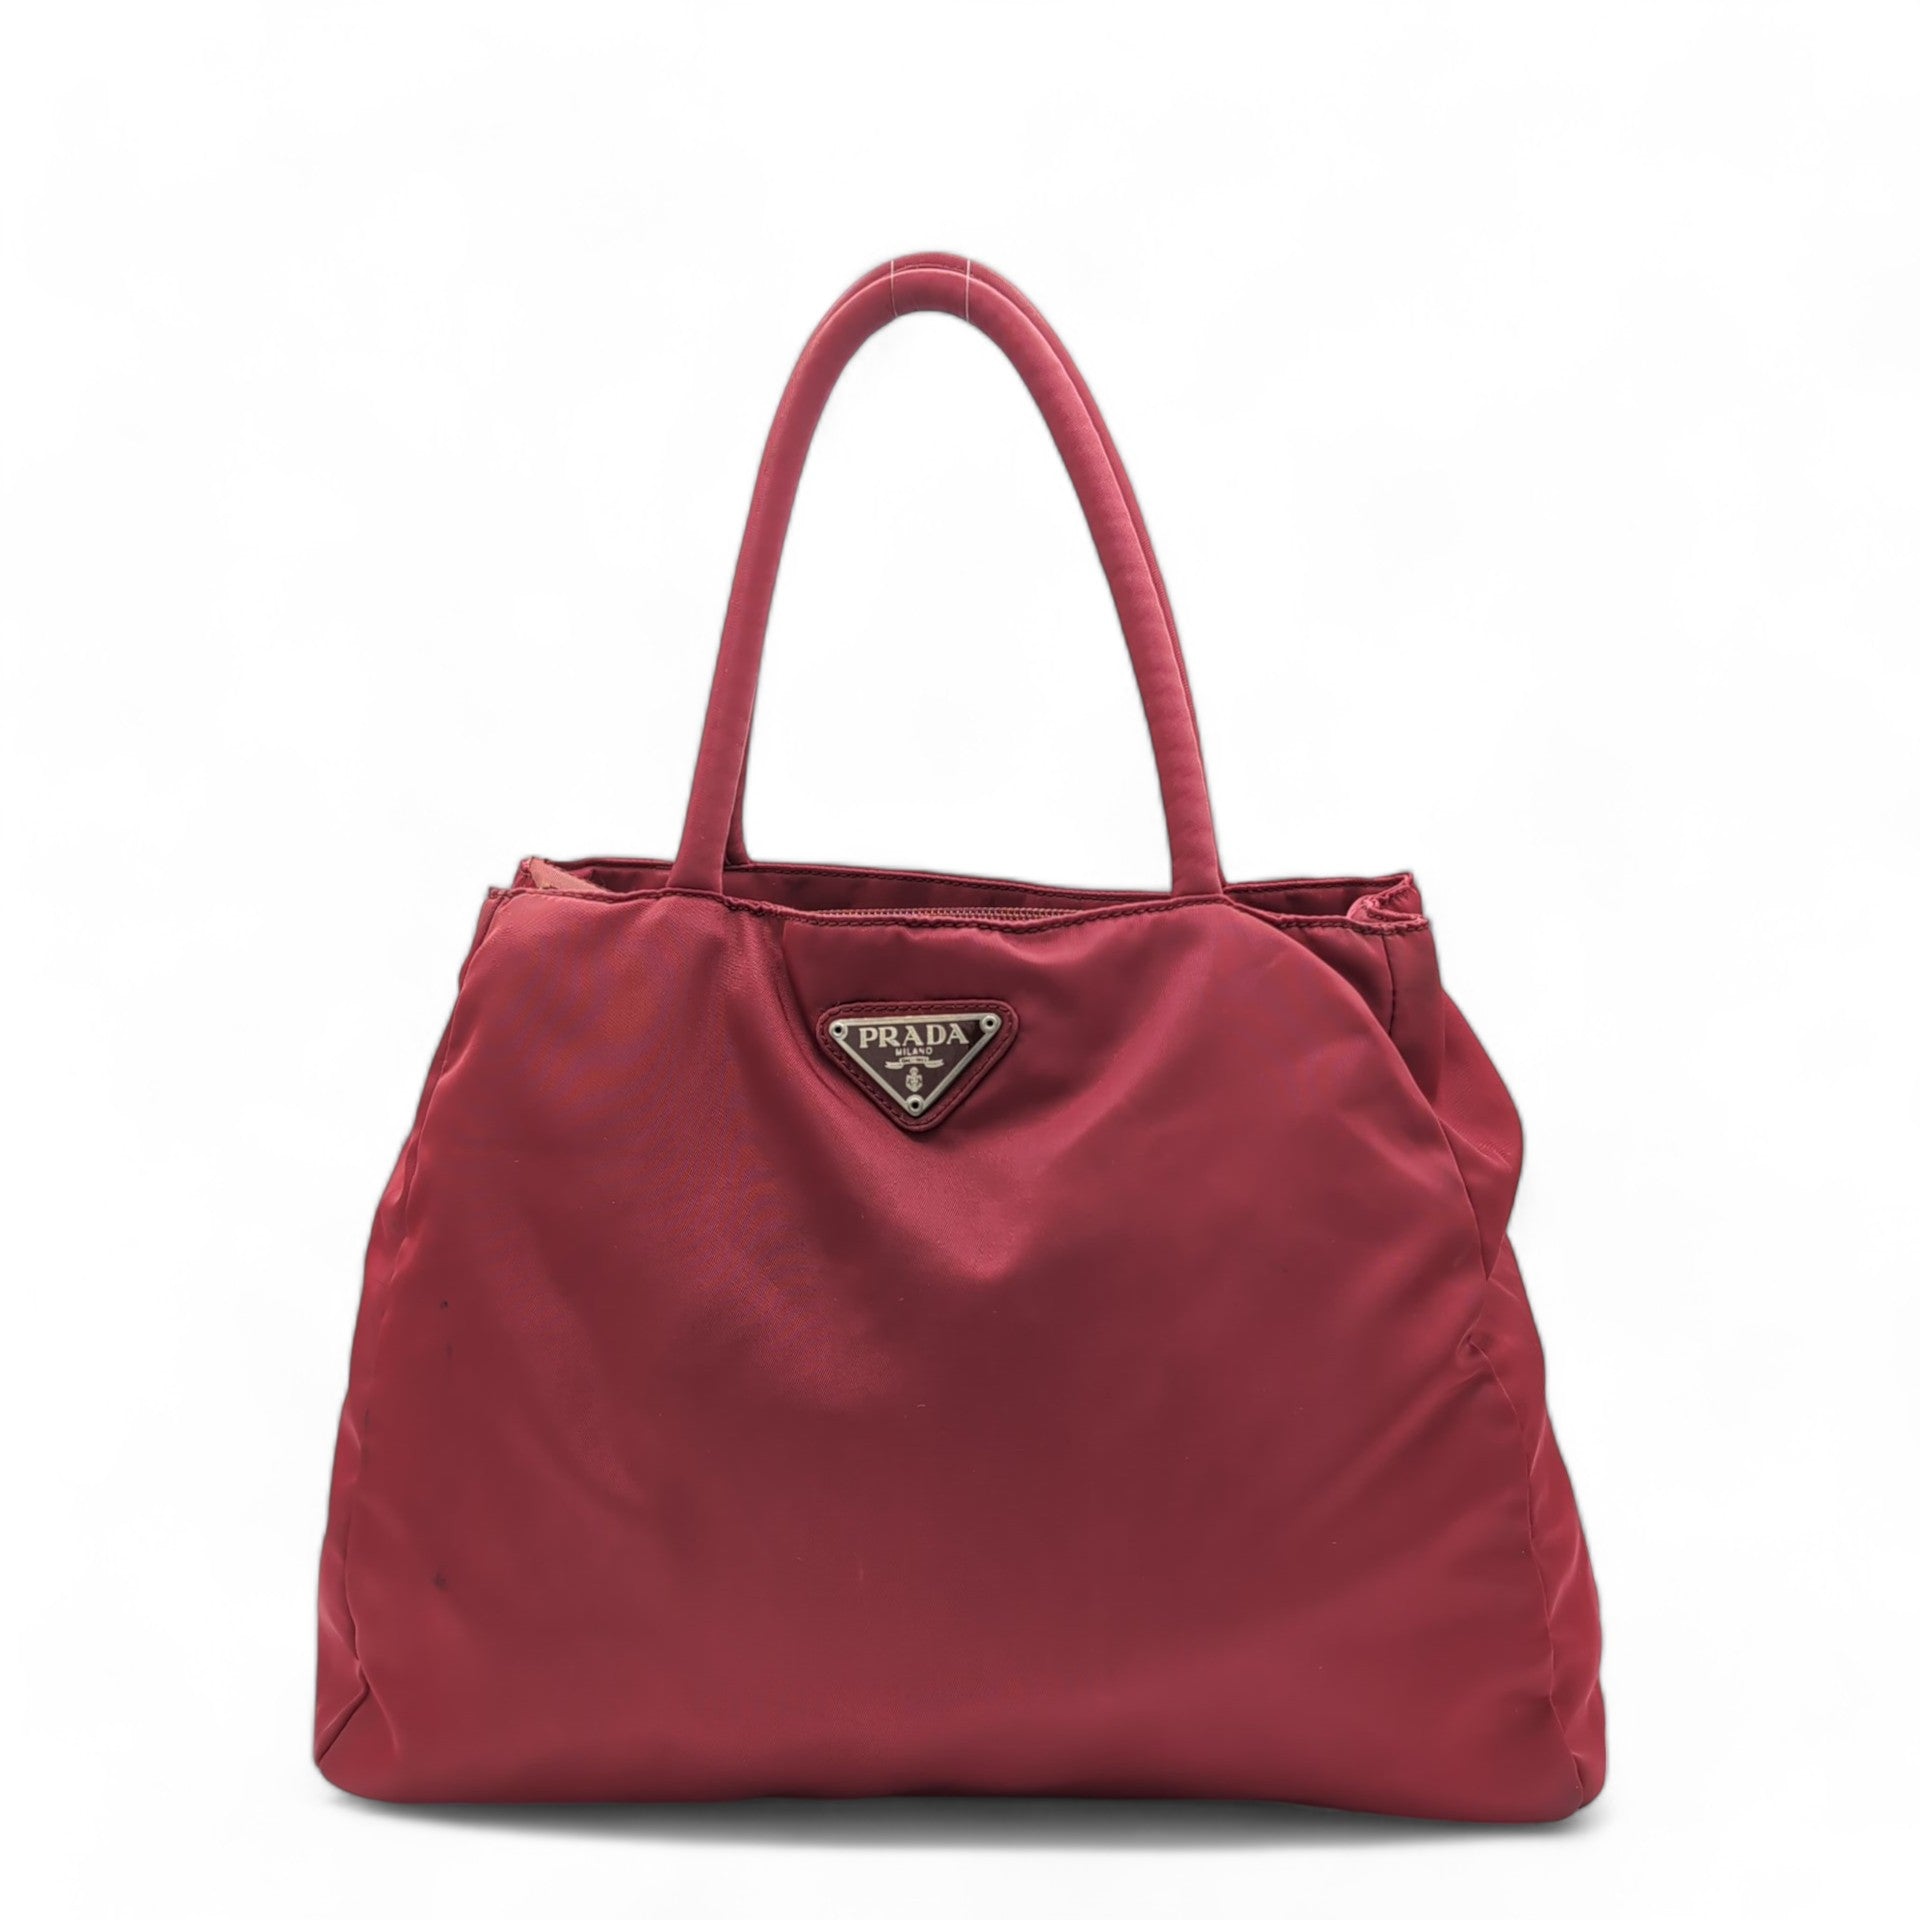 Prada Handtasche / Shopper aus Nylon rot